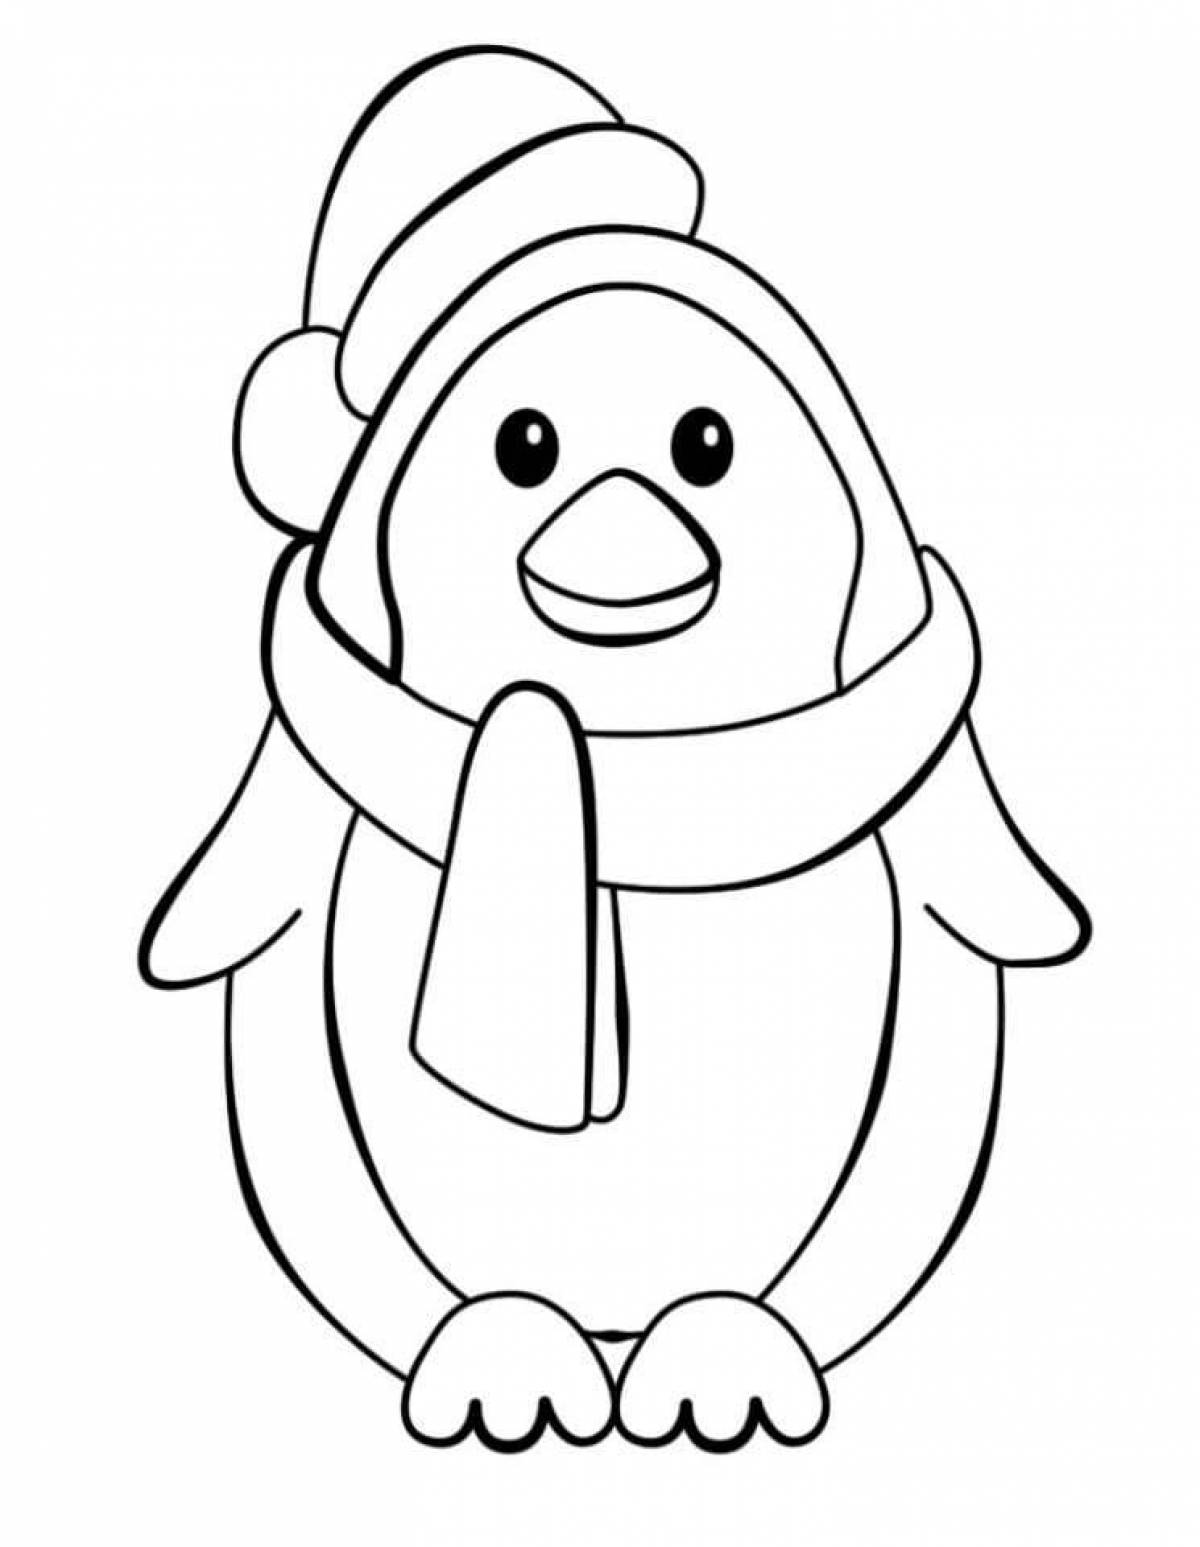 Раскраска очаровательный пингвин для детей